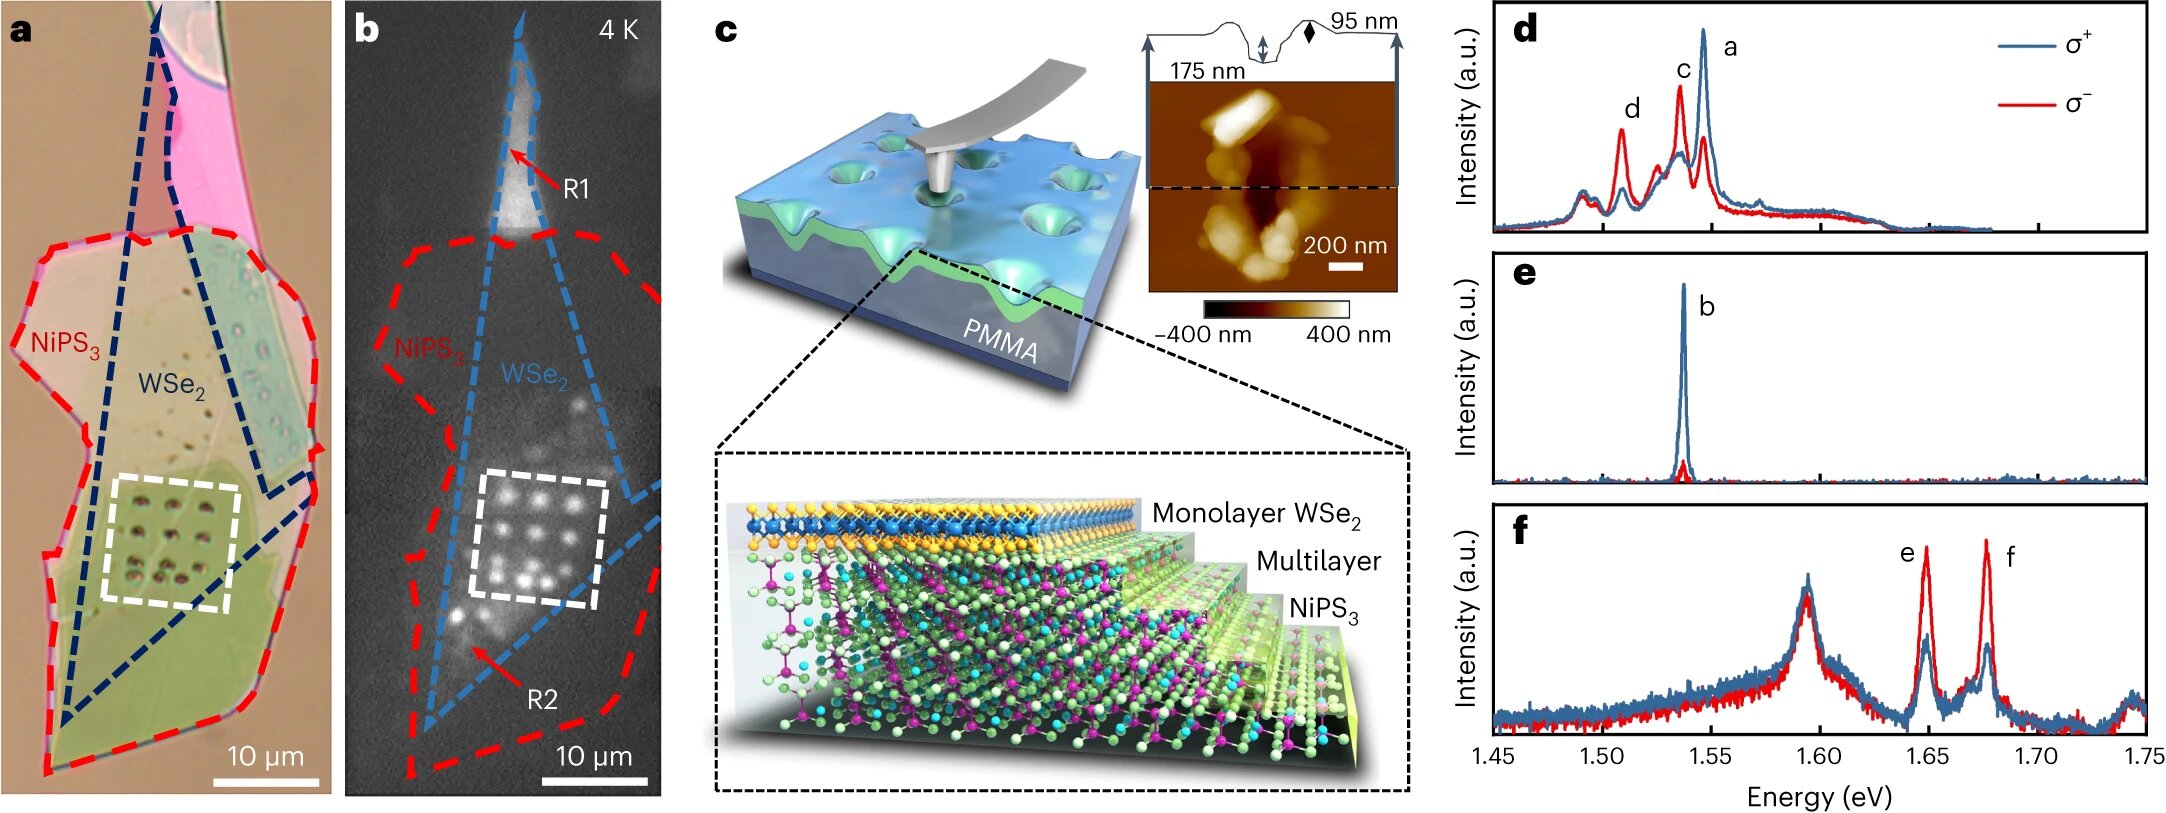 Un nouveau dispositif quantique génère des photons uniques et code des informations